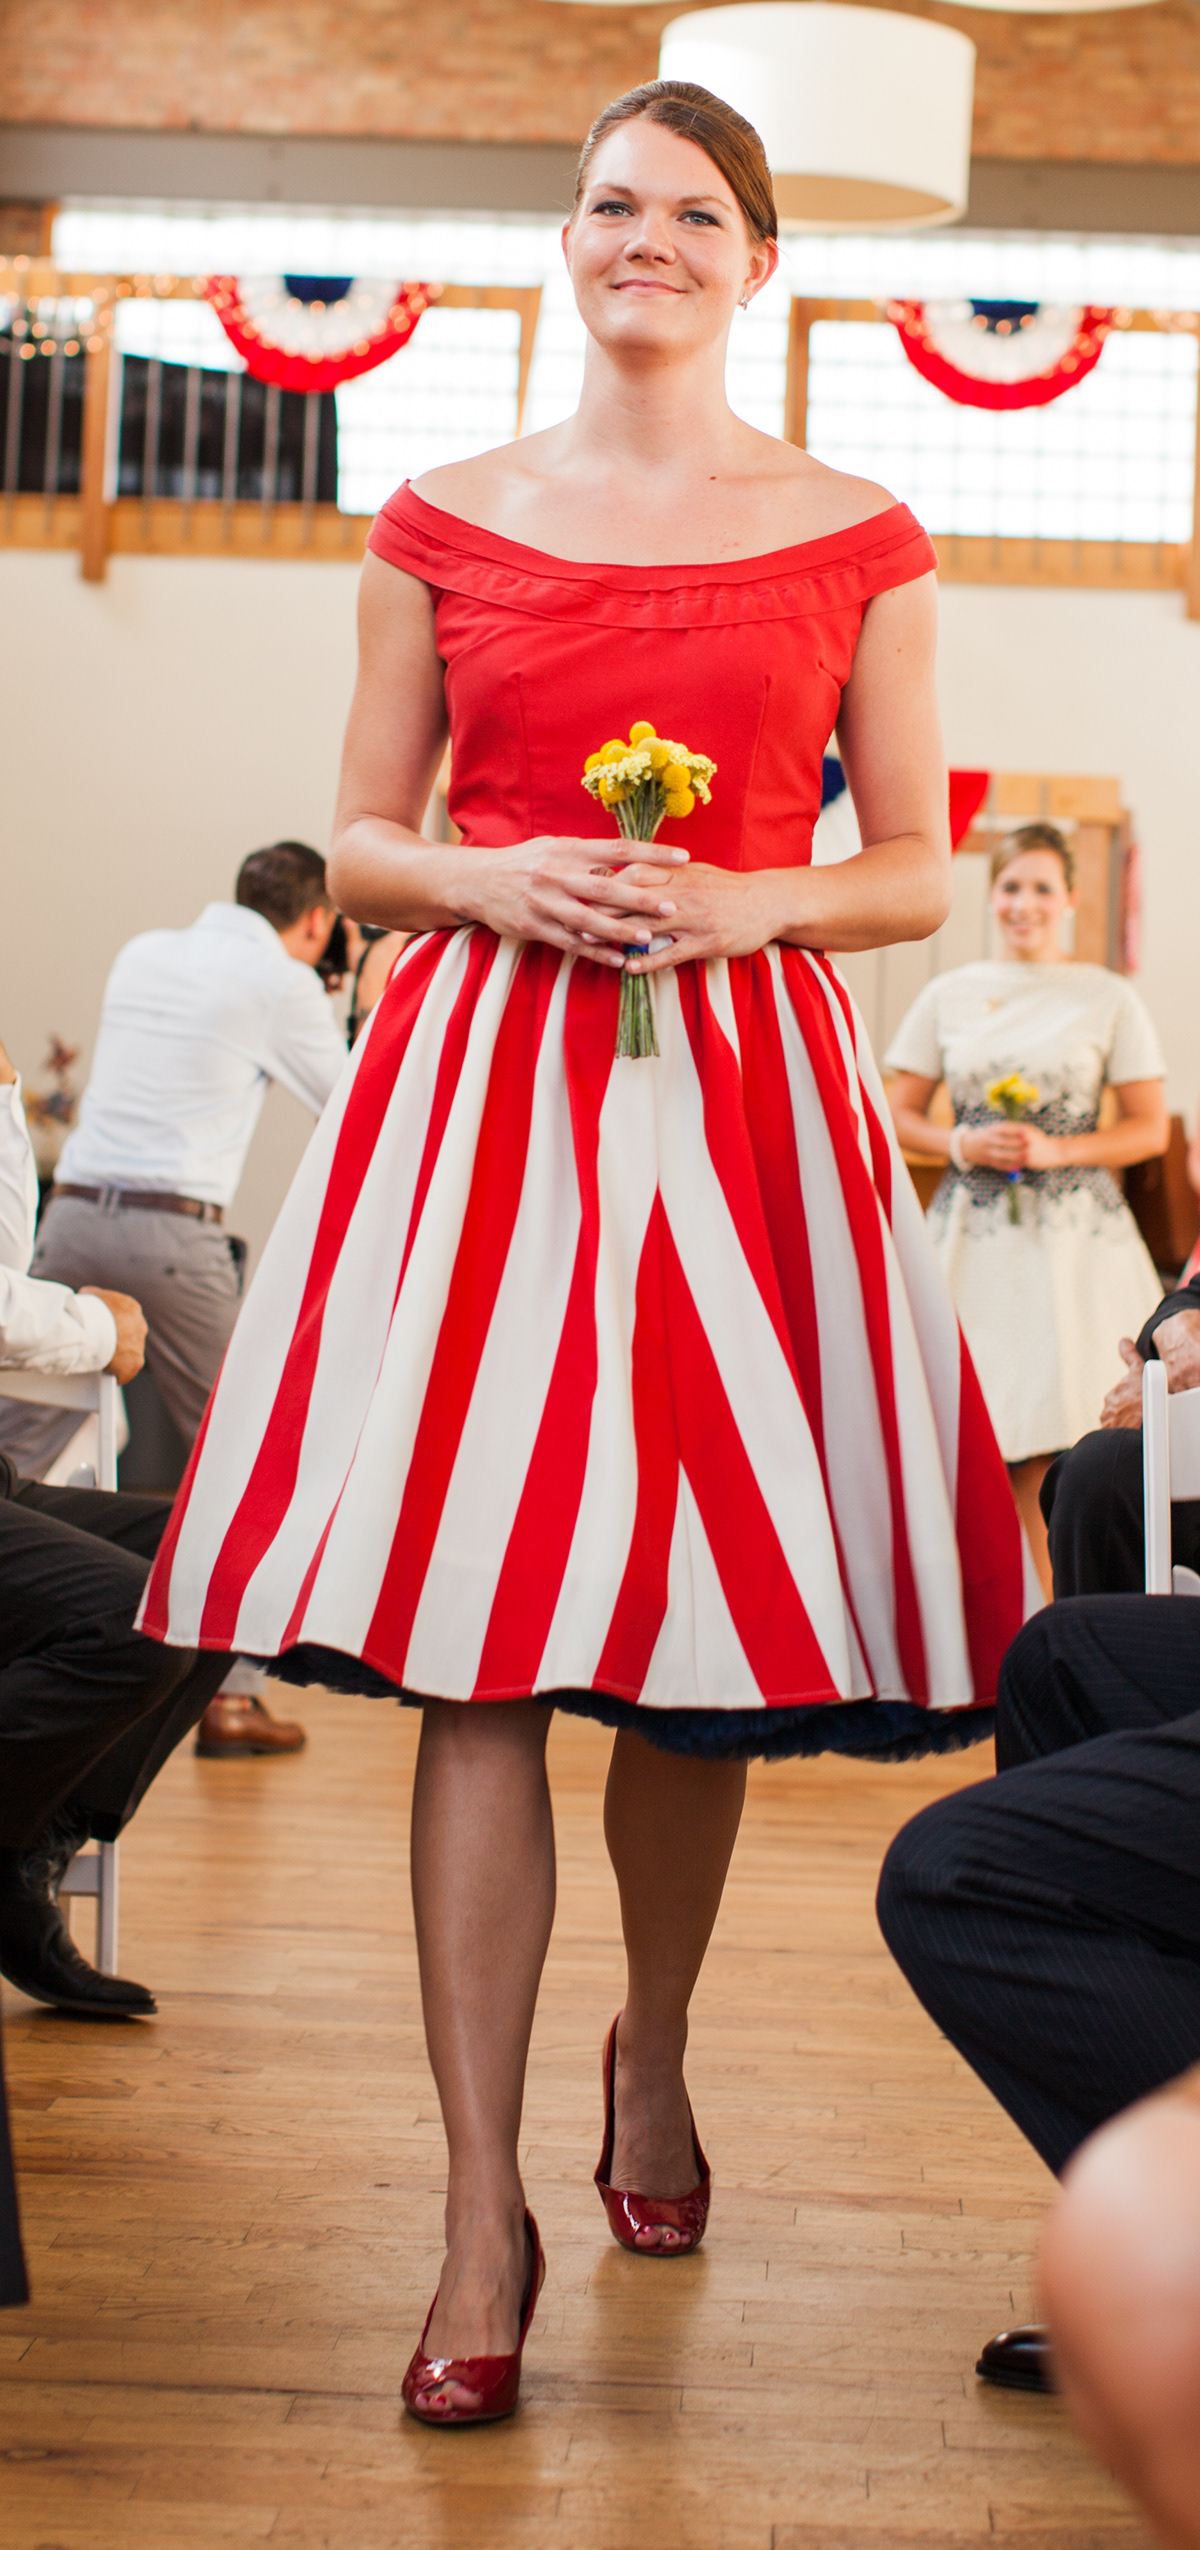 fashion design tailoring fitting wedding sewing